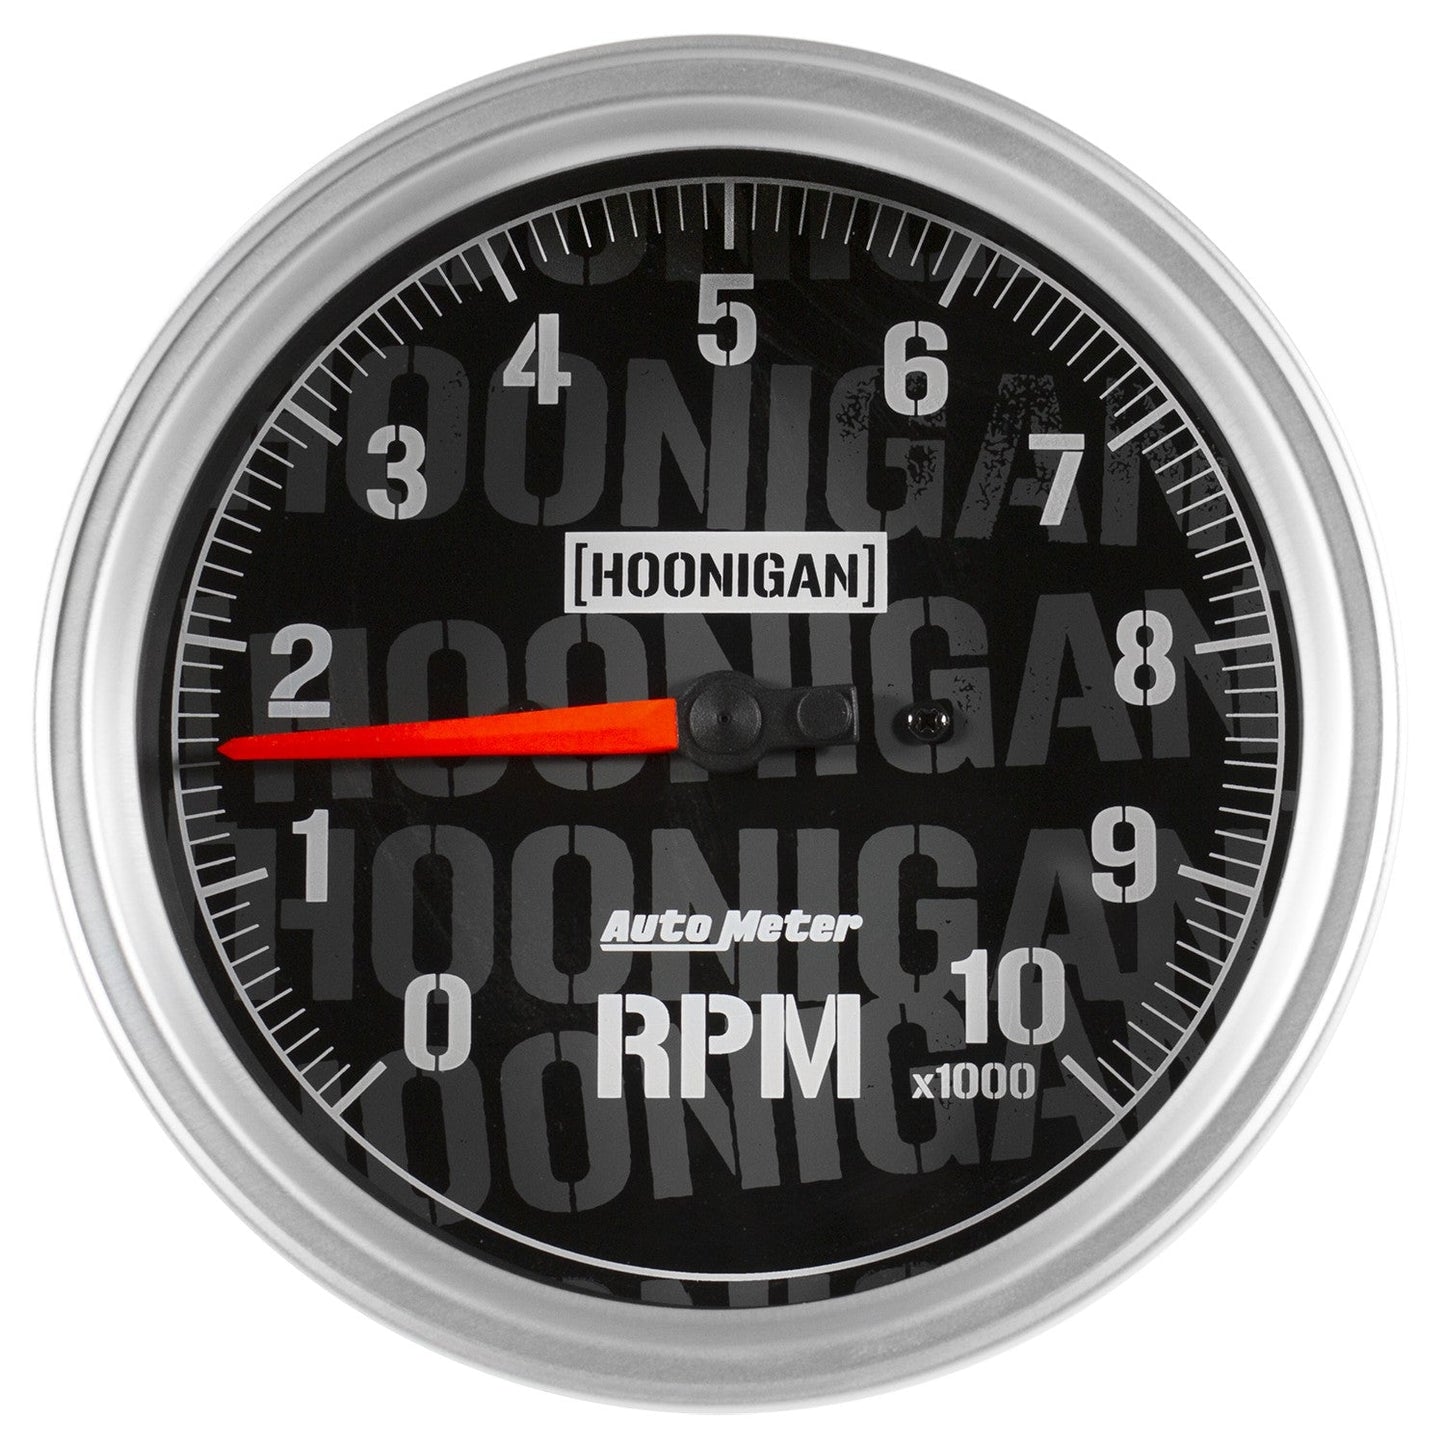 AutoMeter - 5" TACHOMETER, 0-10,000 RPM, IN-DASH, HOONIGAN (4498-09000)